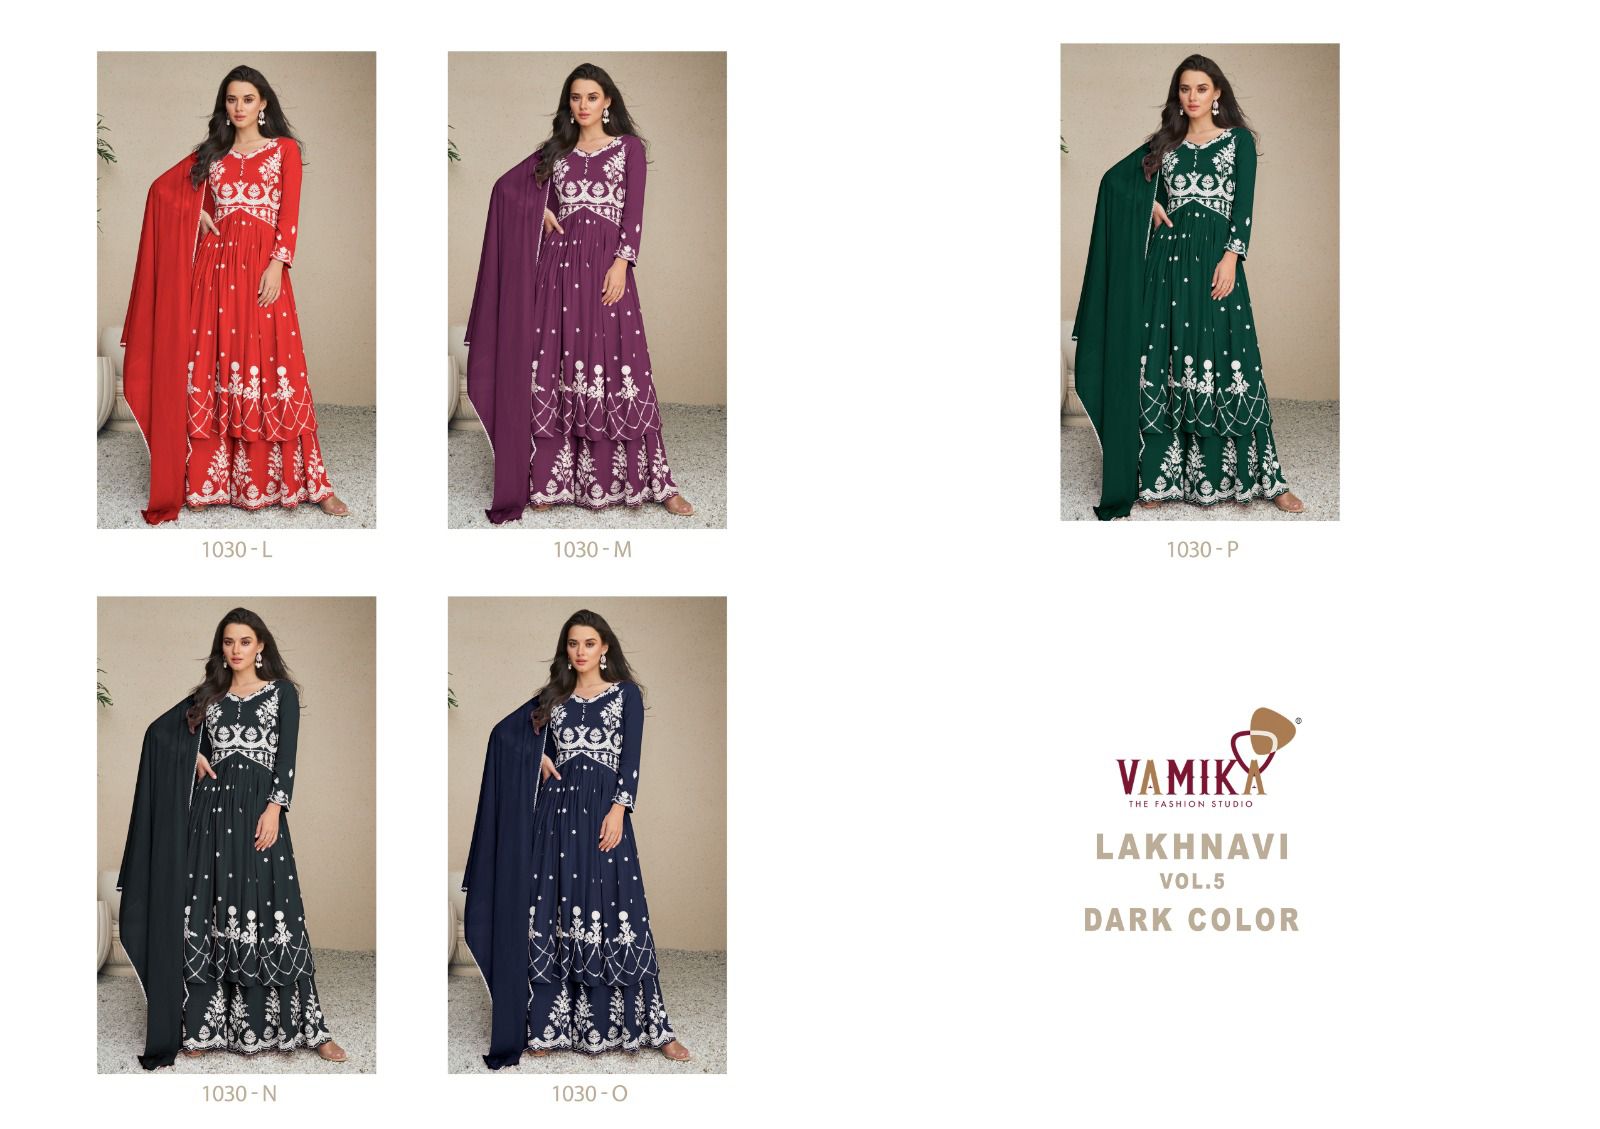 Vamika Lakhnavi Vol 5 Dark Color collection 5